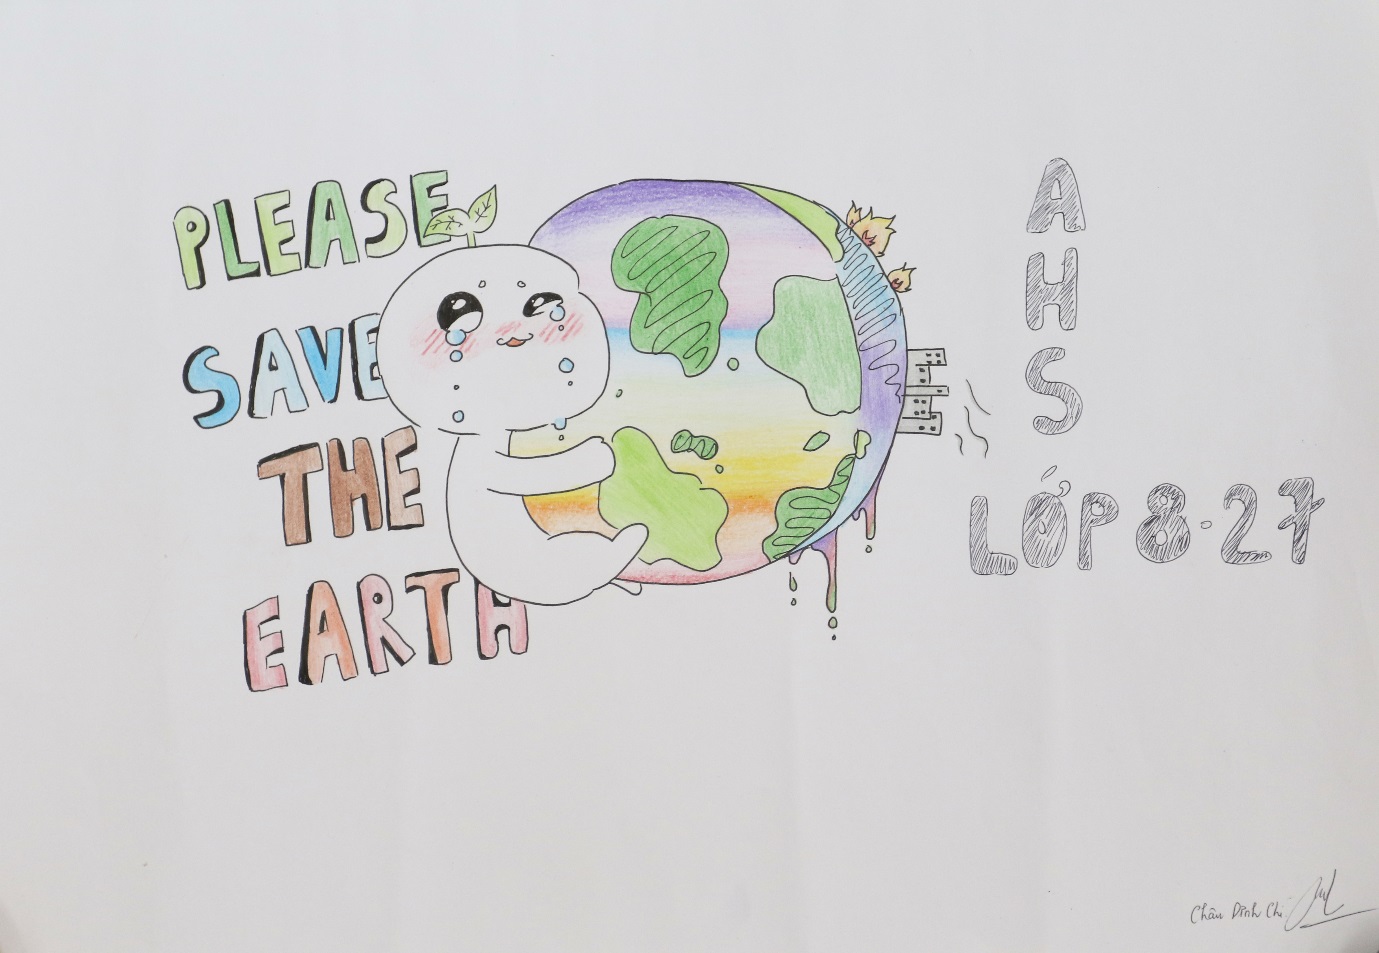 Cùng học sinh Asian School truyền tải thông điệp SAVE THE EARTH